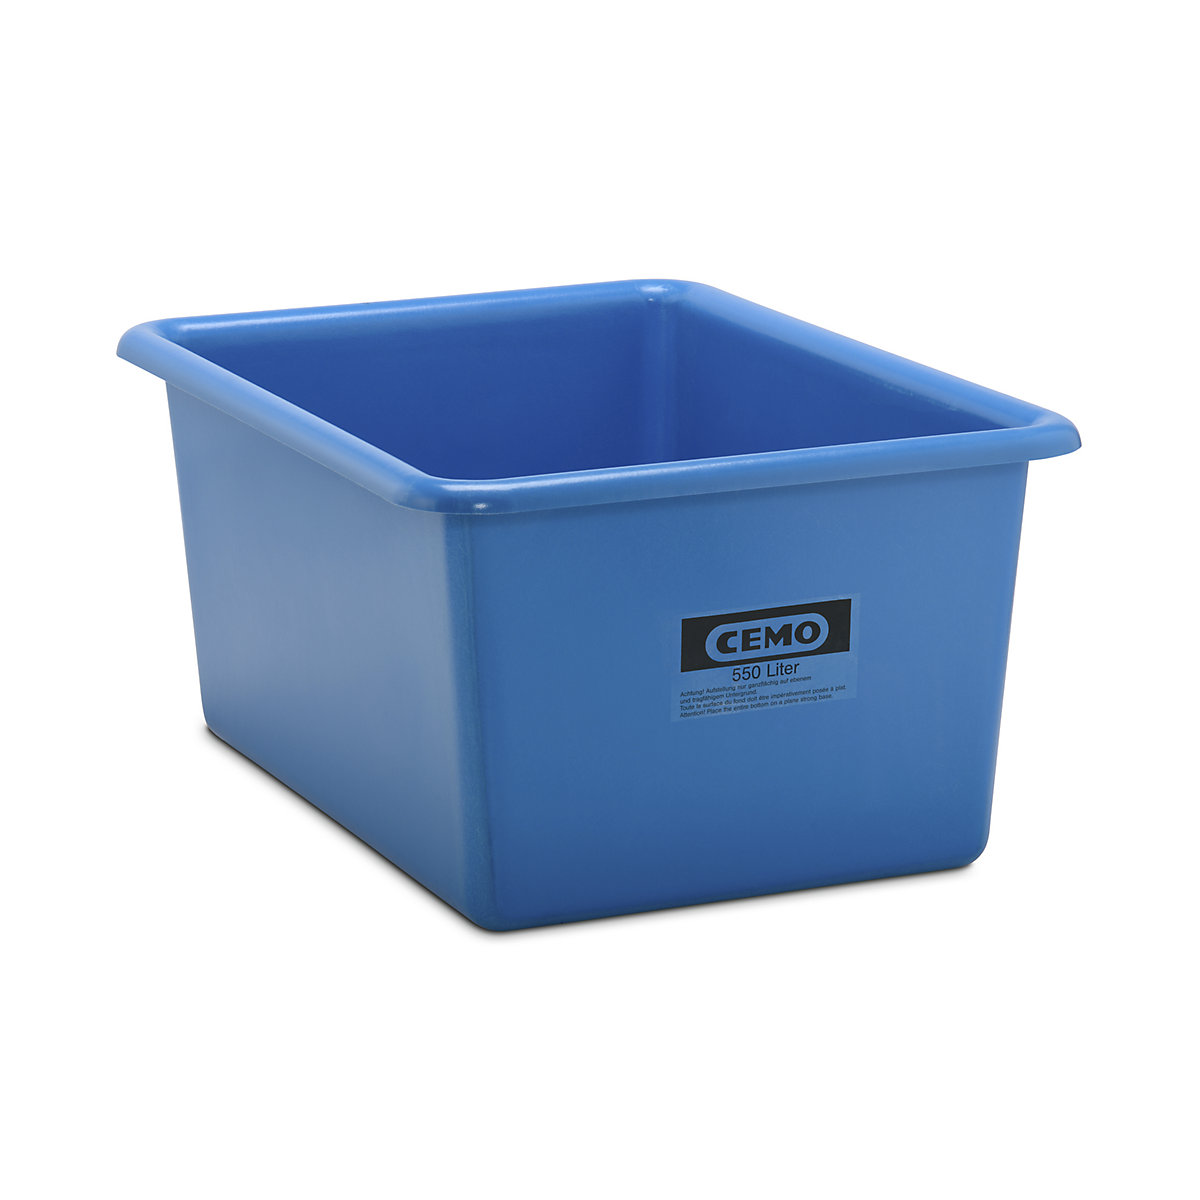 CEMO Großbehälter aus GfK, Inhalt 550 l, LxBxH 1320 x 970 x 620 mm, blau